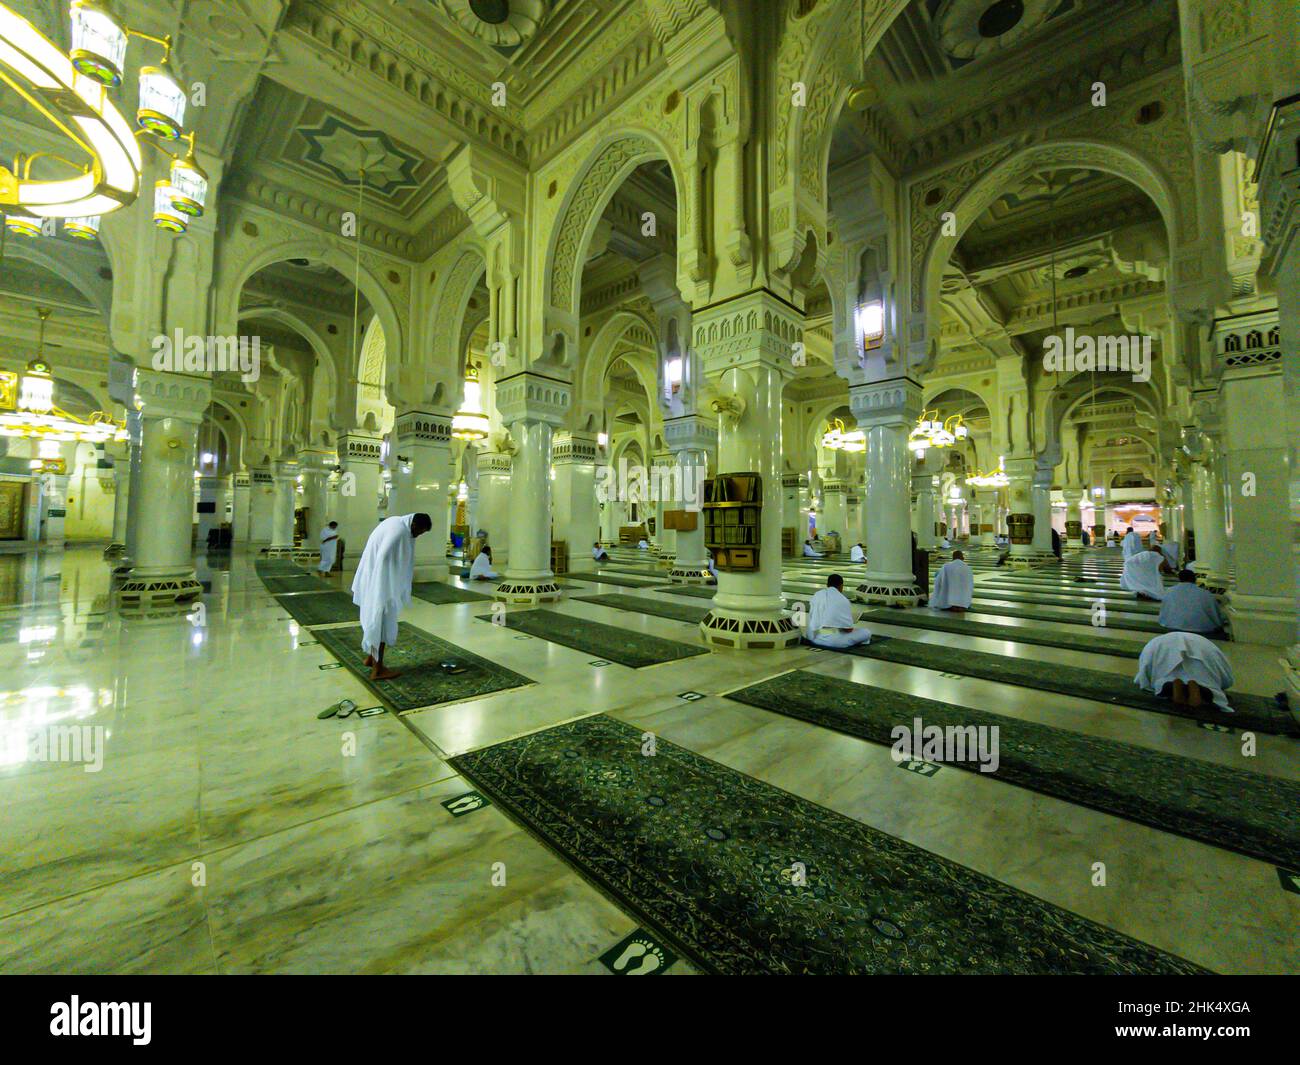 Mosquée du roi Fahd, Mekka (la Mecque), Royaume d'Arabie saoudite, Moyen-Orient Banque D'Images